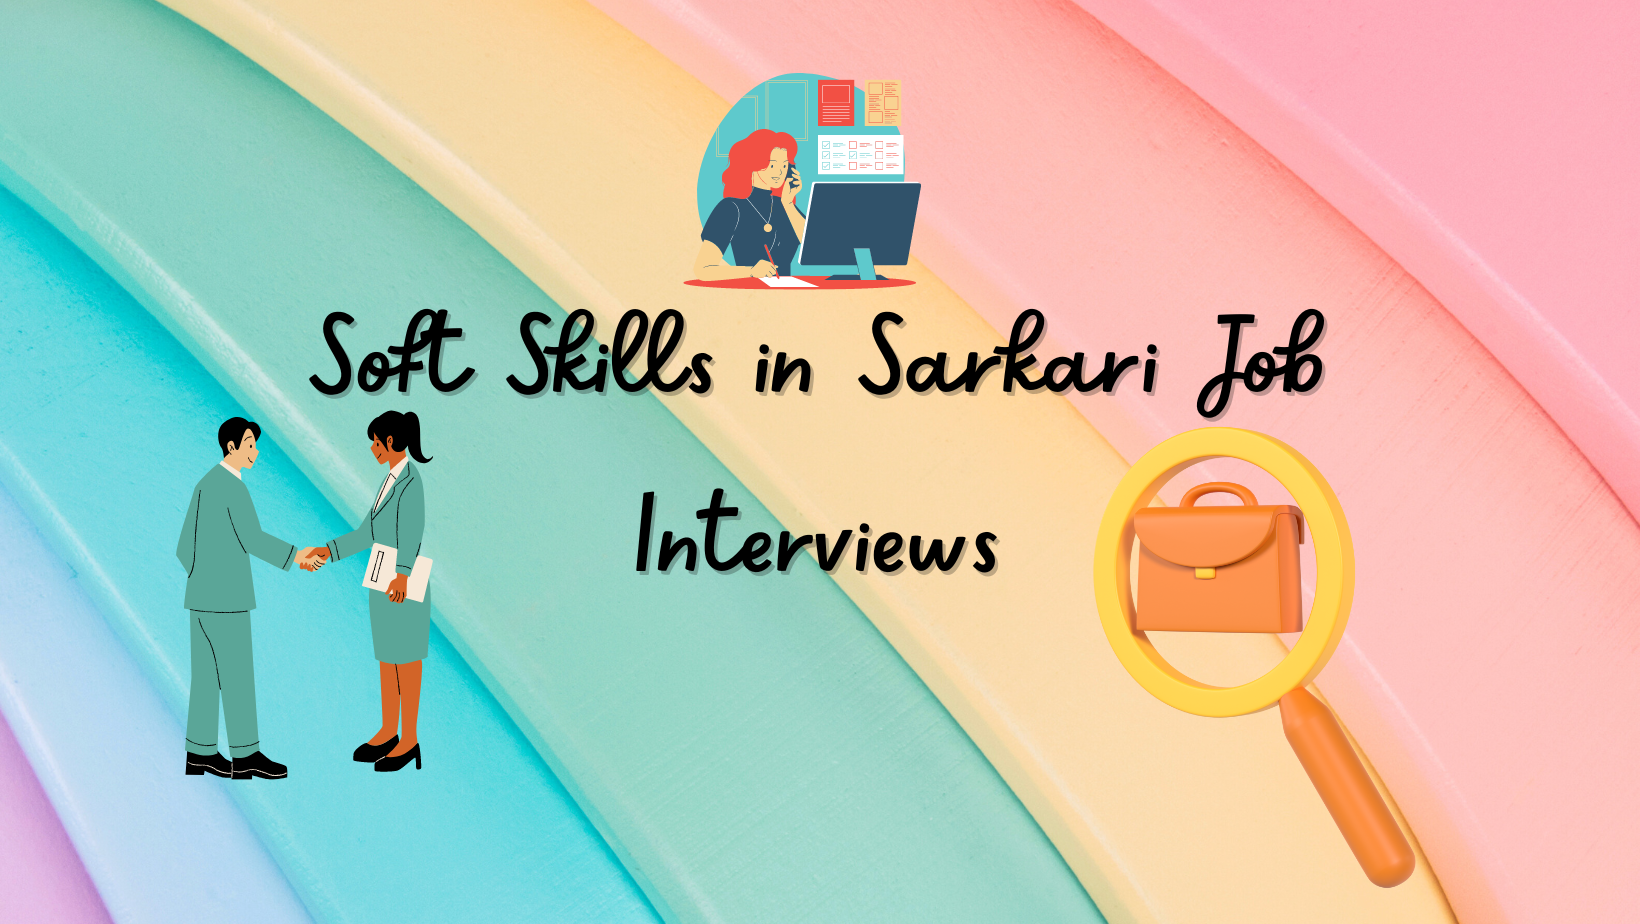 Soft Skills in Sarkari Job Interviews